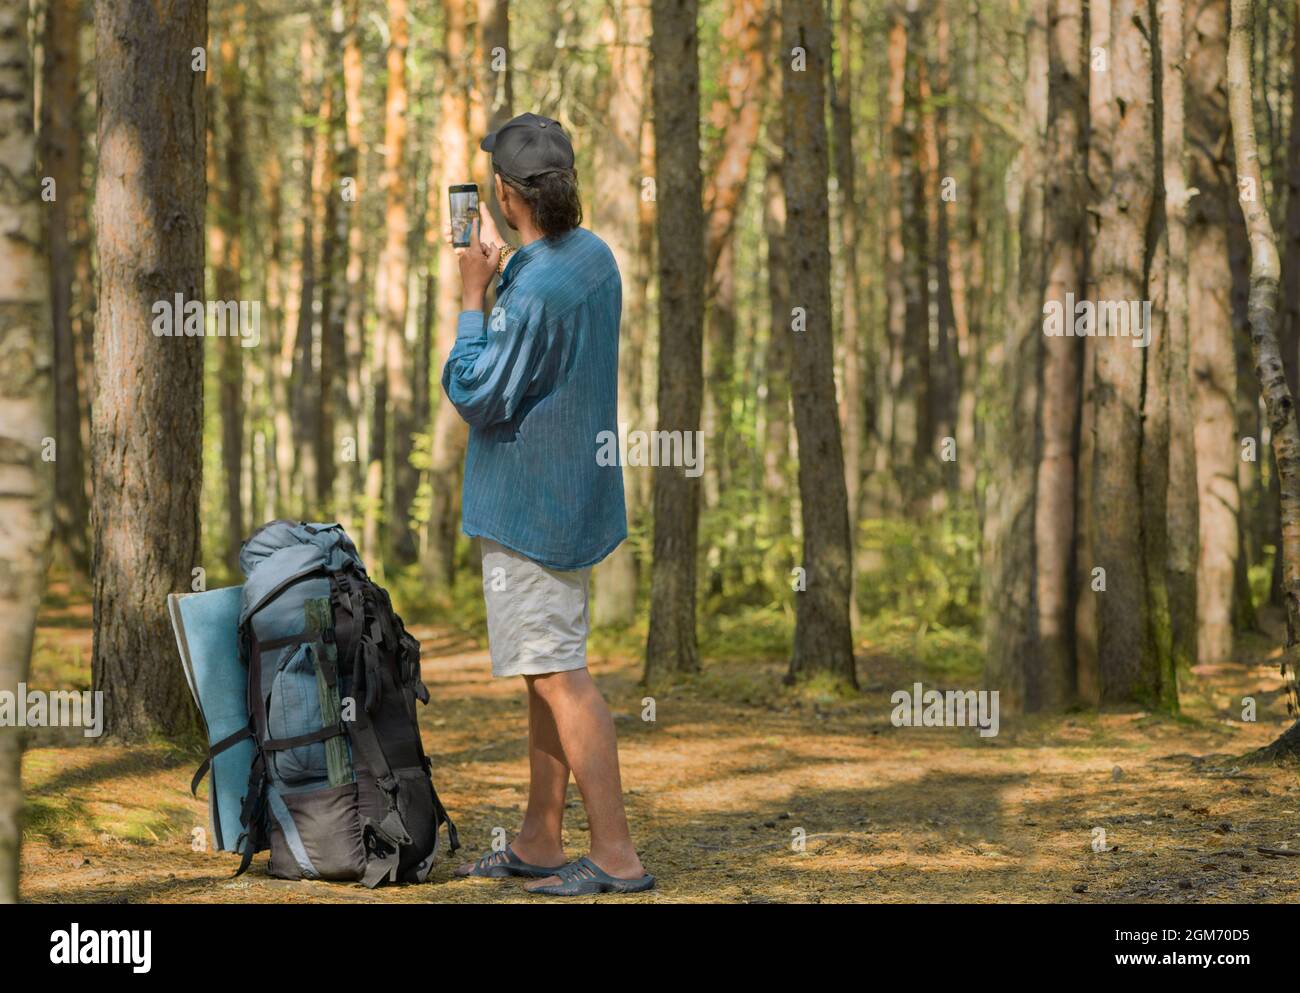 El hombre caucásico con su gran mochila turística está tomando una selfie en un bosque. Foto de stock